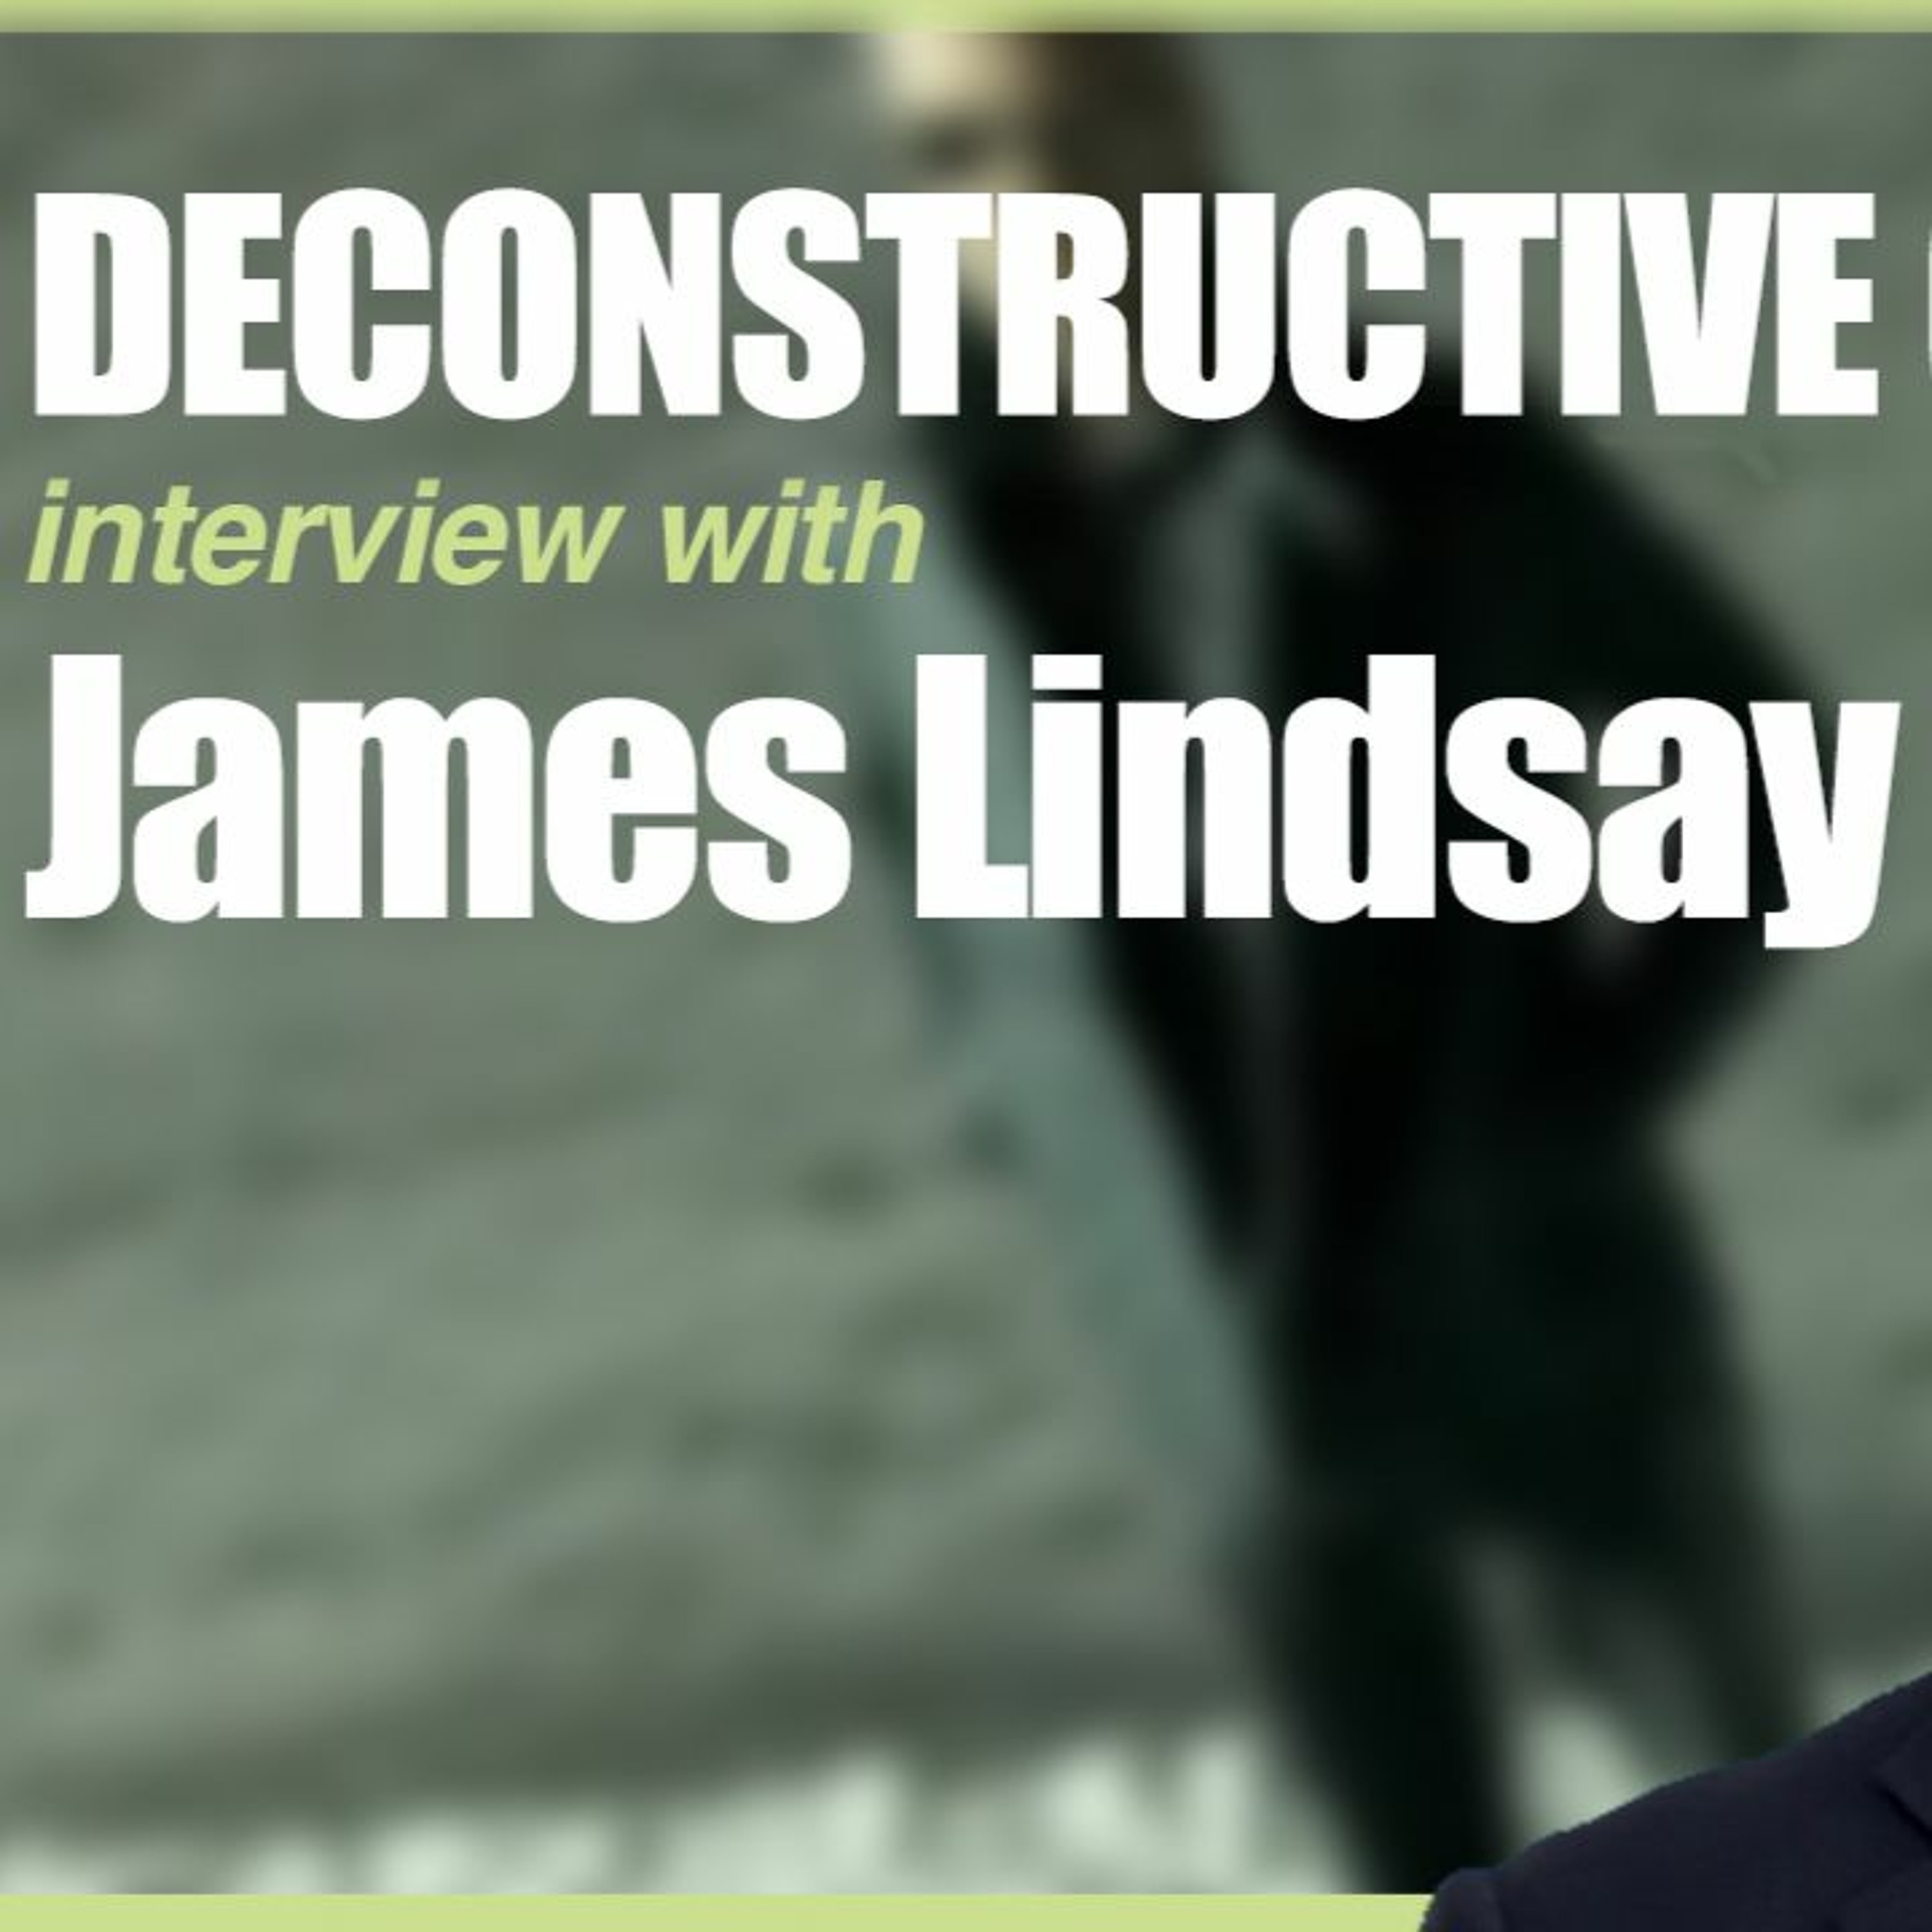 James Lindsay Vs. Cynical theories